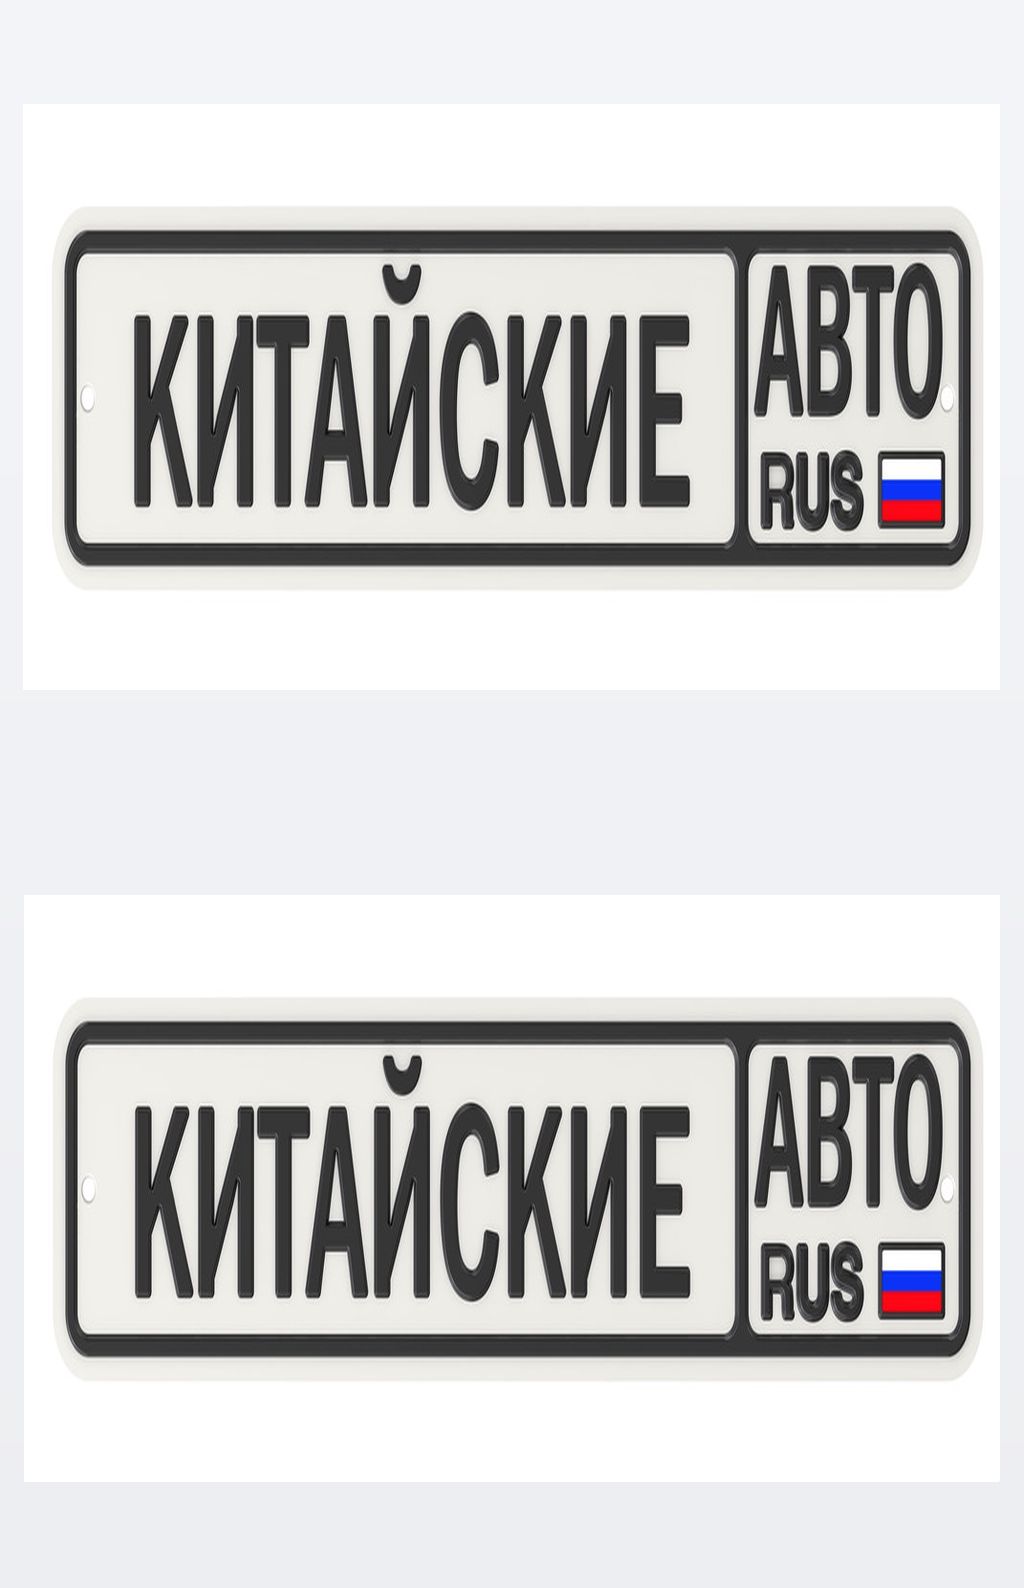 俄语汽车品牌发音